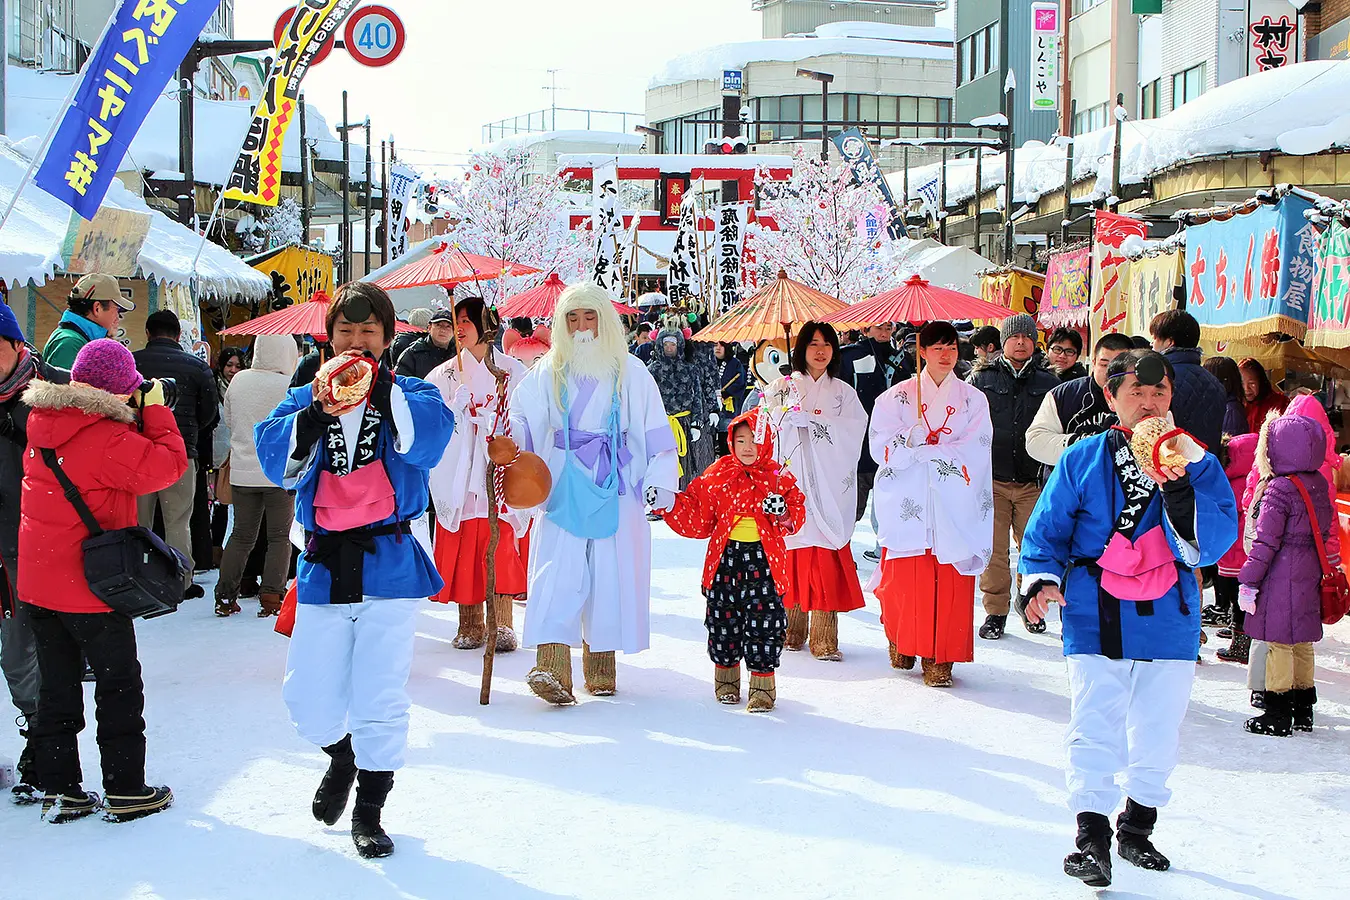 雪国秋田の冬祭り。寒い冬だからこそ出会える幻想的な世界へ | ブランニューアキタ | アキタファン